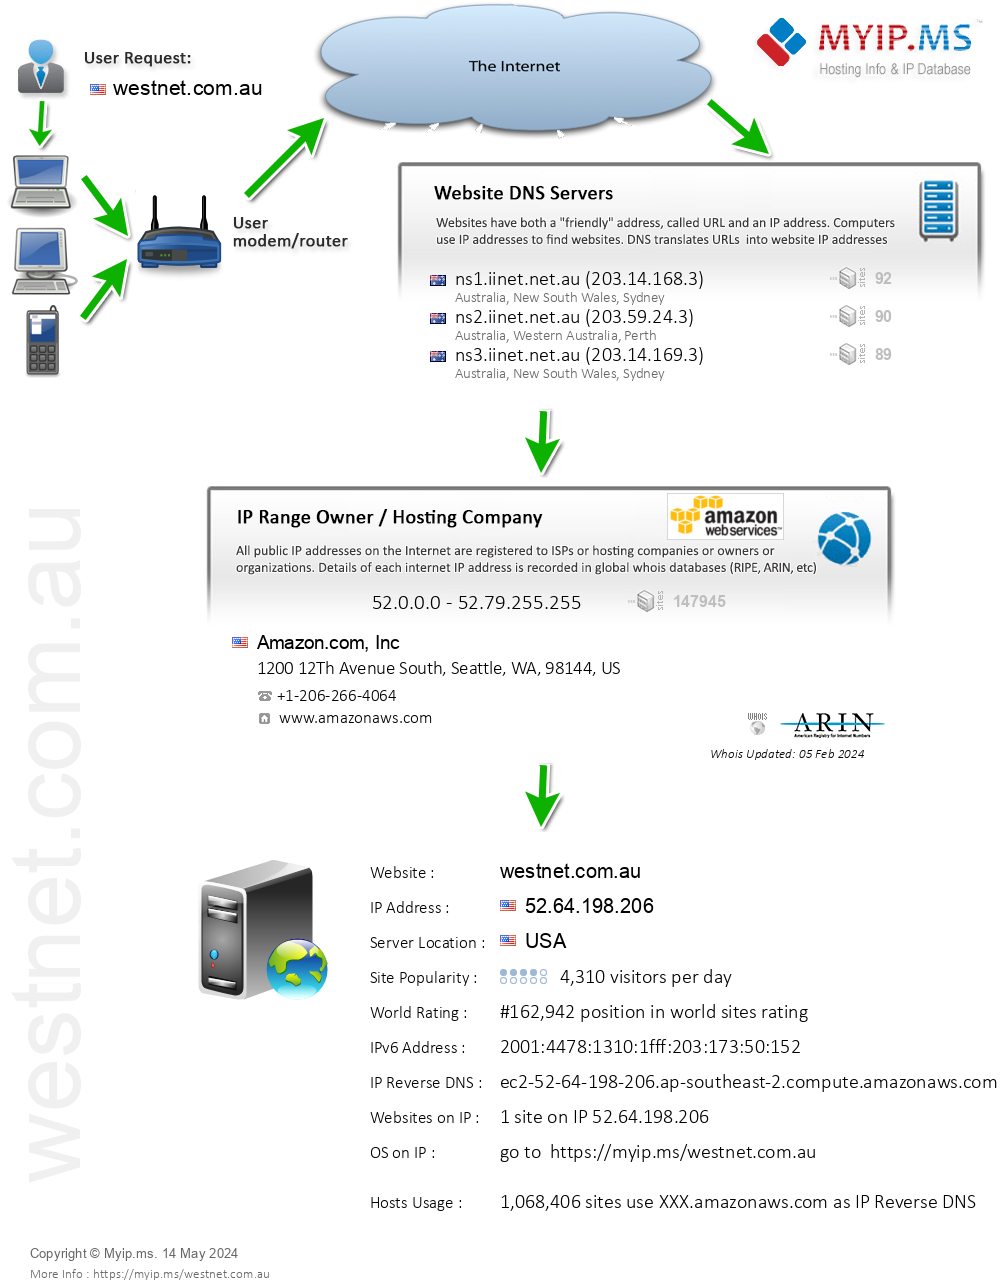 Westnet.com.au - Website Hosting Visual IP Diagram